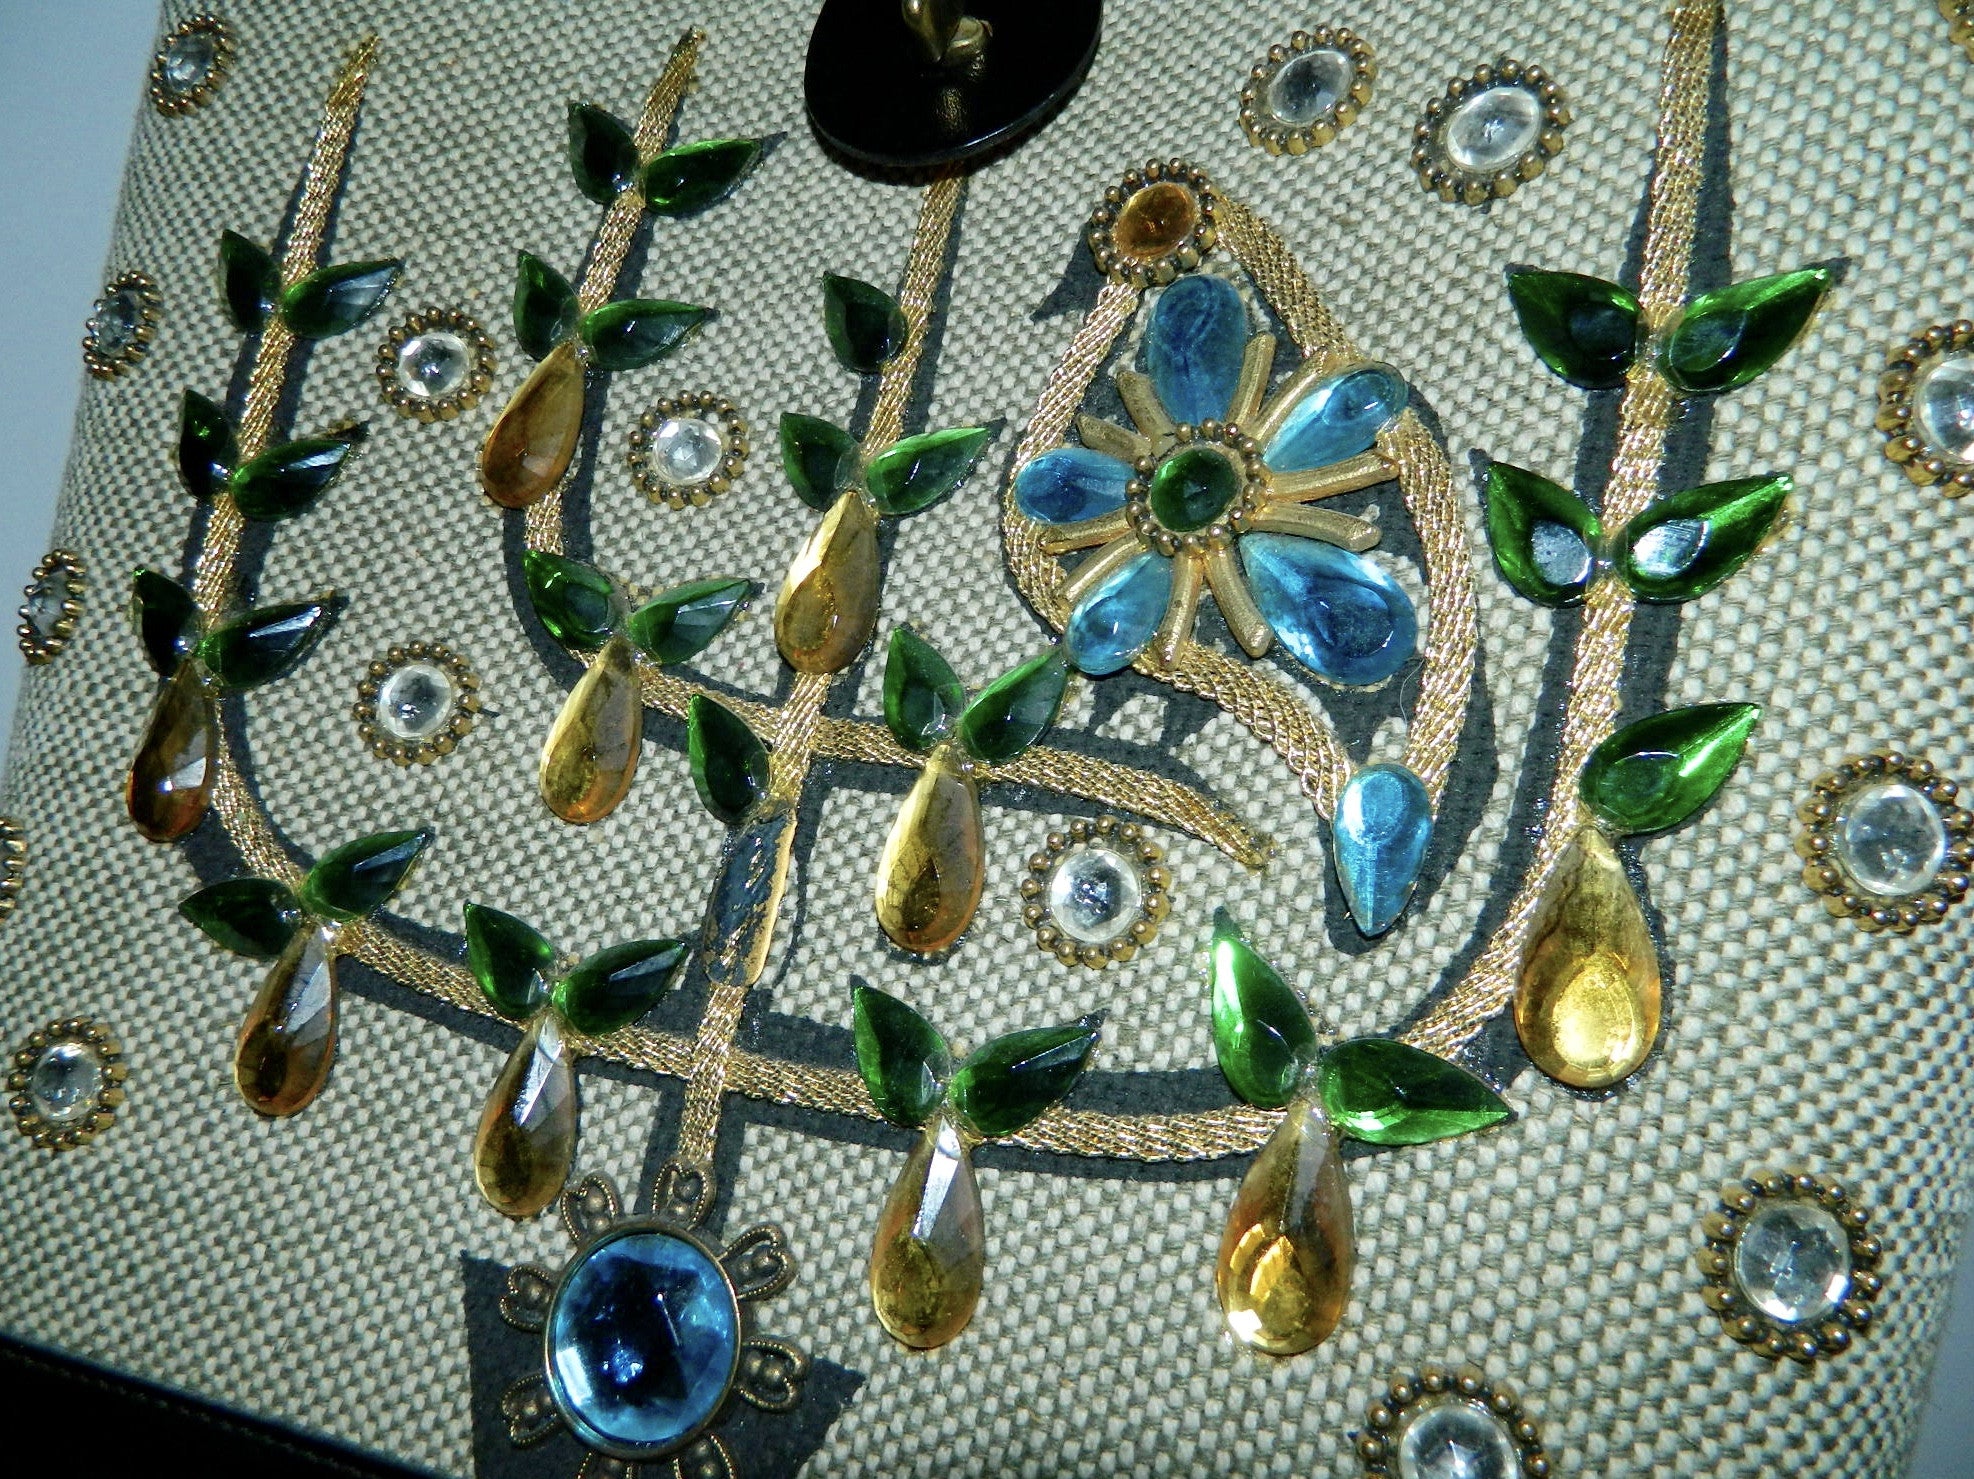 vintage 1960s Enid Collins tote bag Pear Tree jeweled purse wood panel